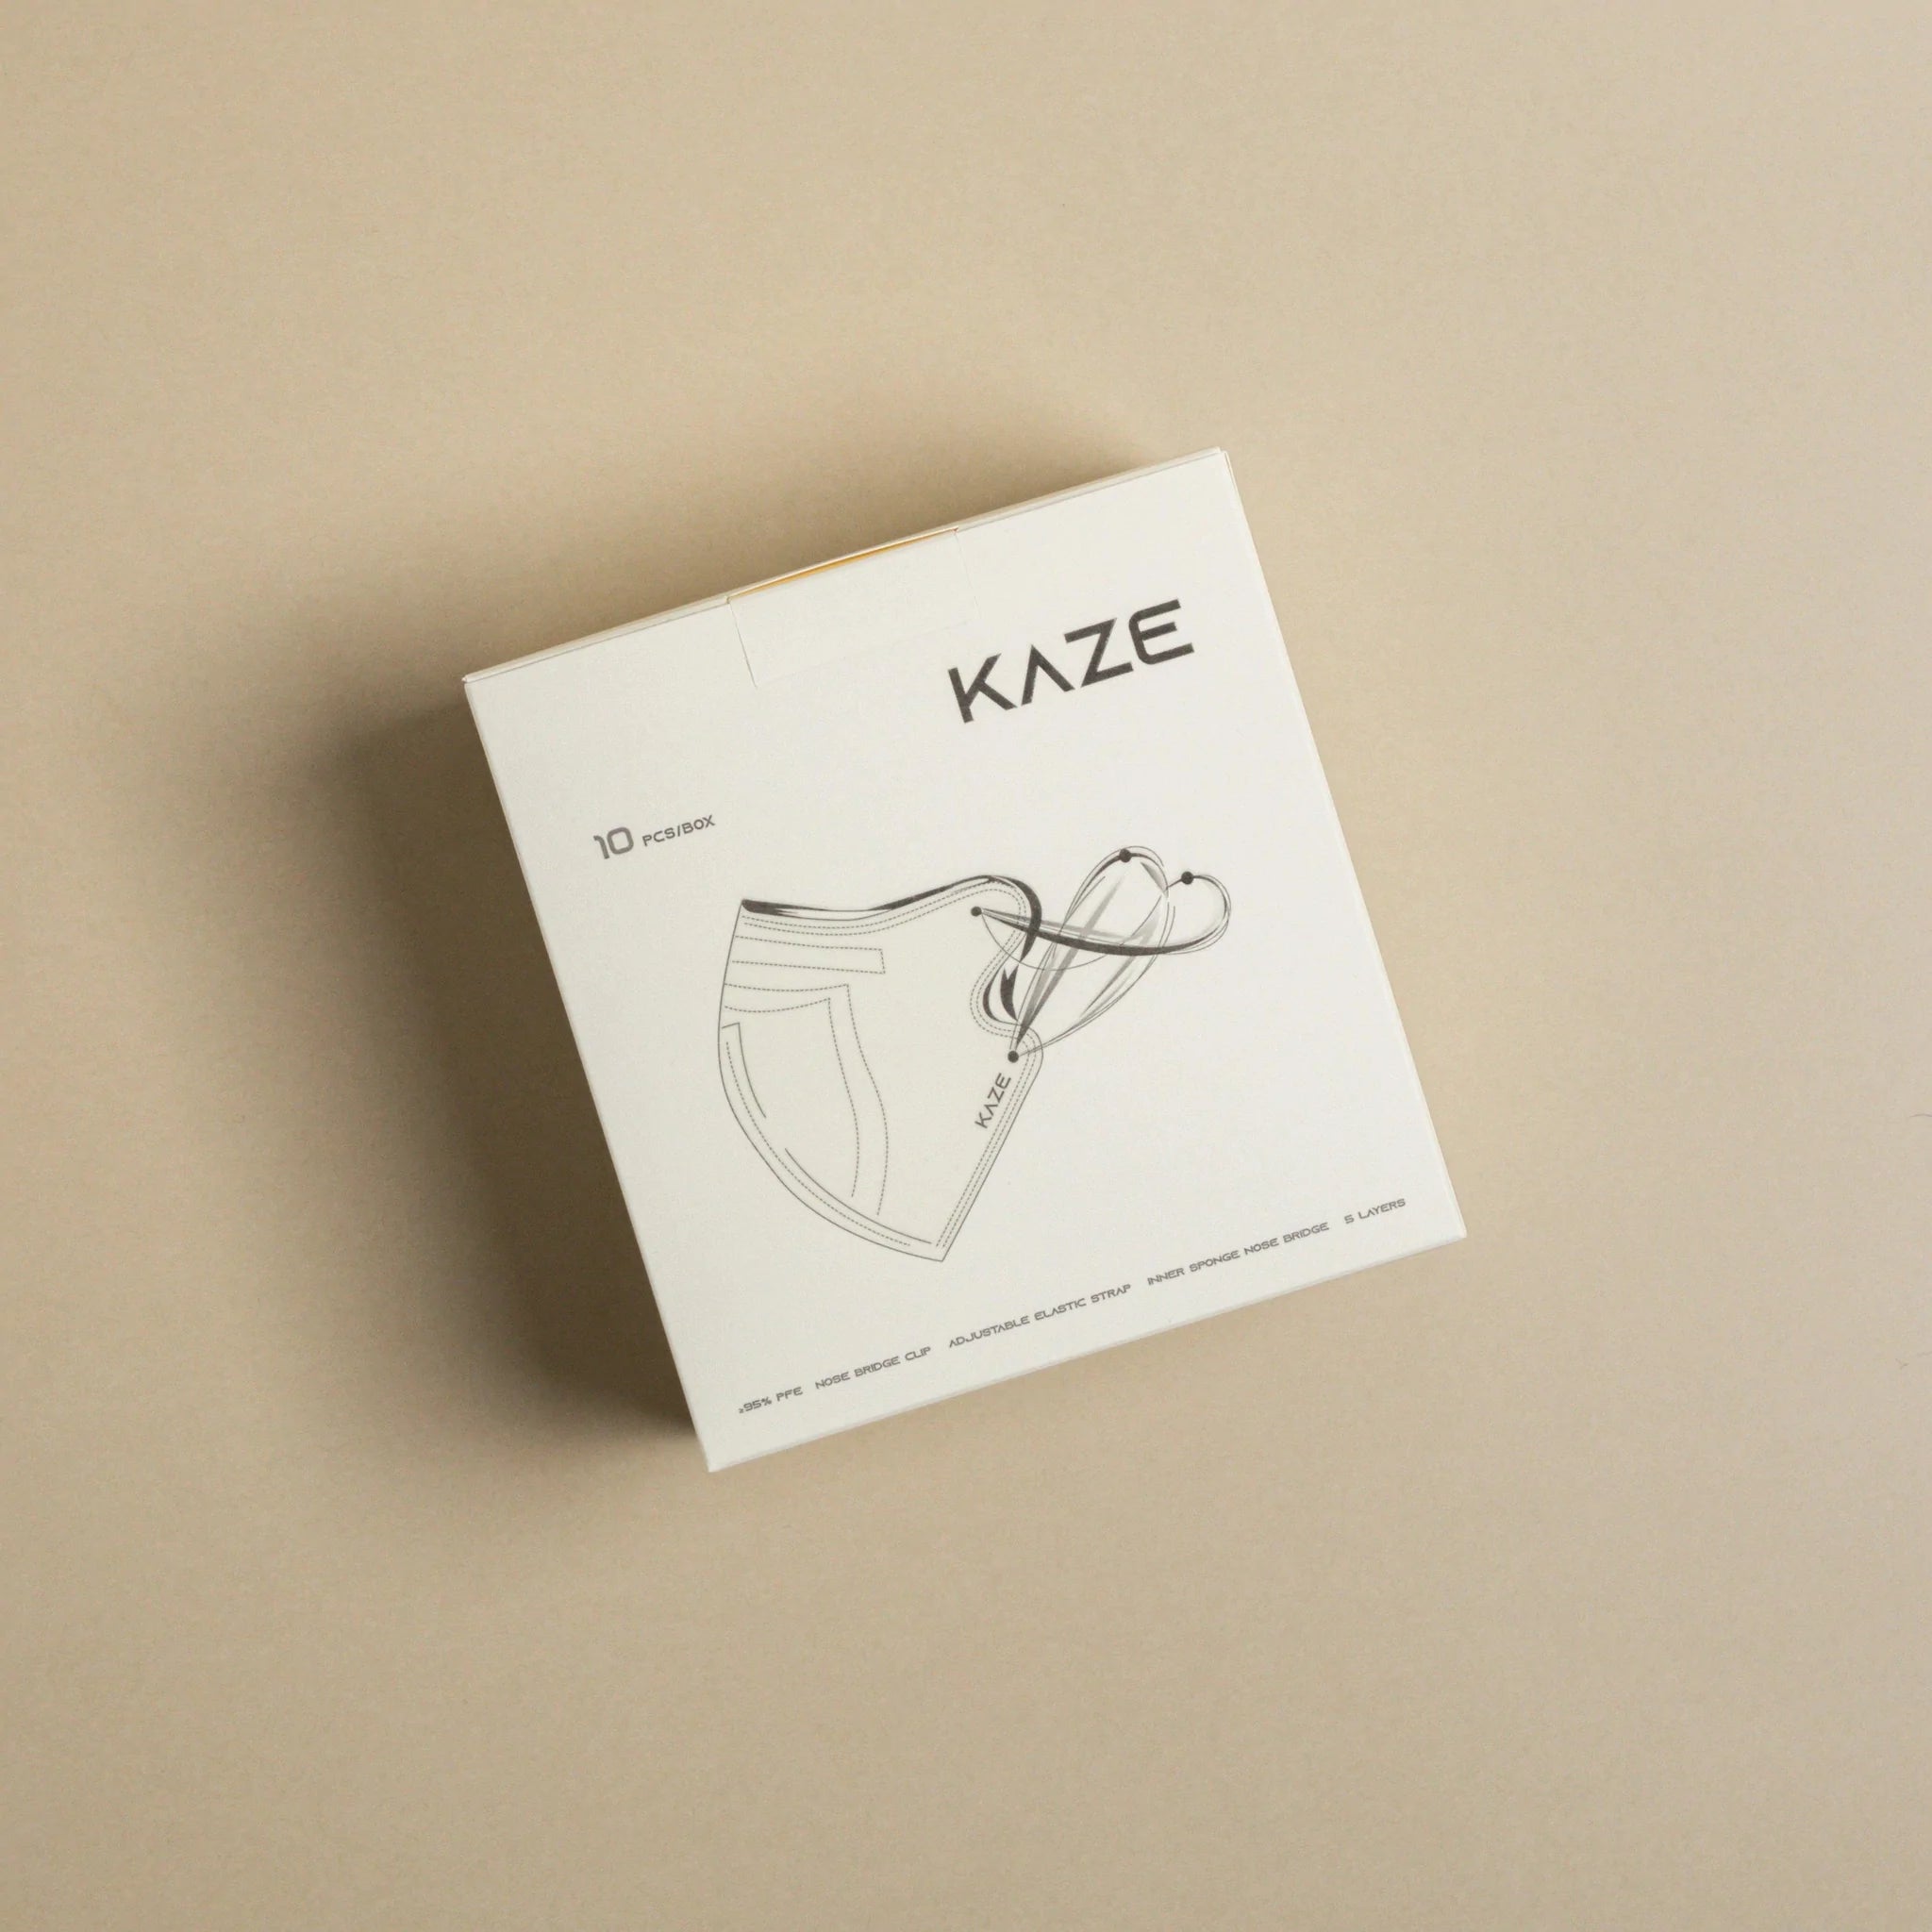 KAZE Masks- Mini Champagne